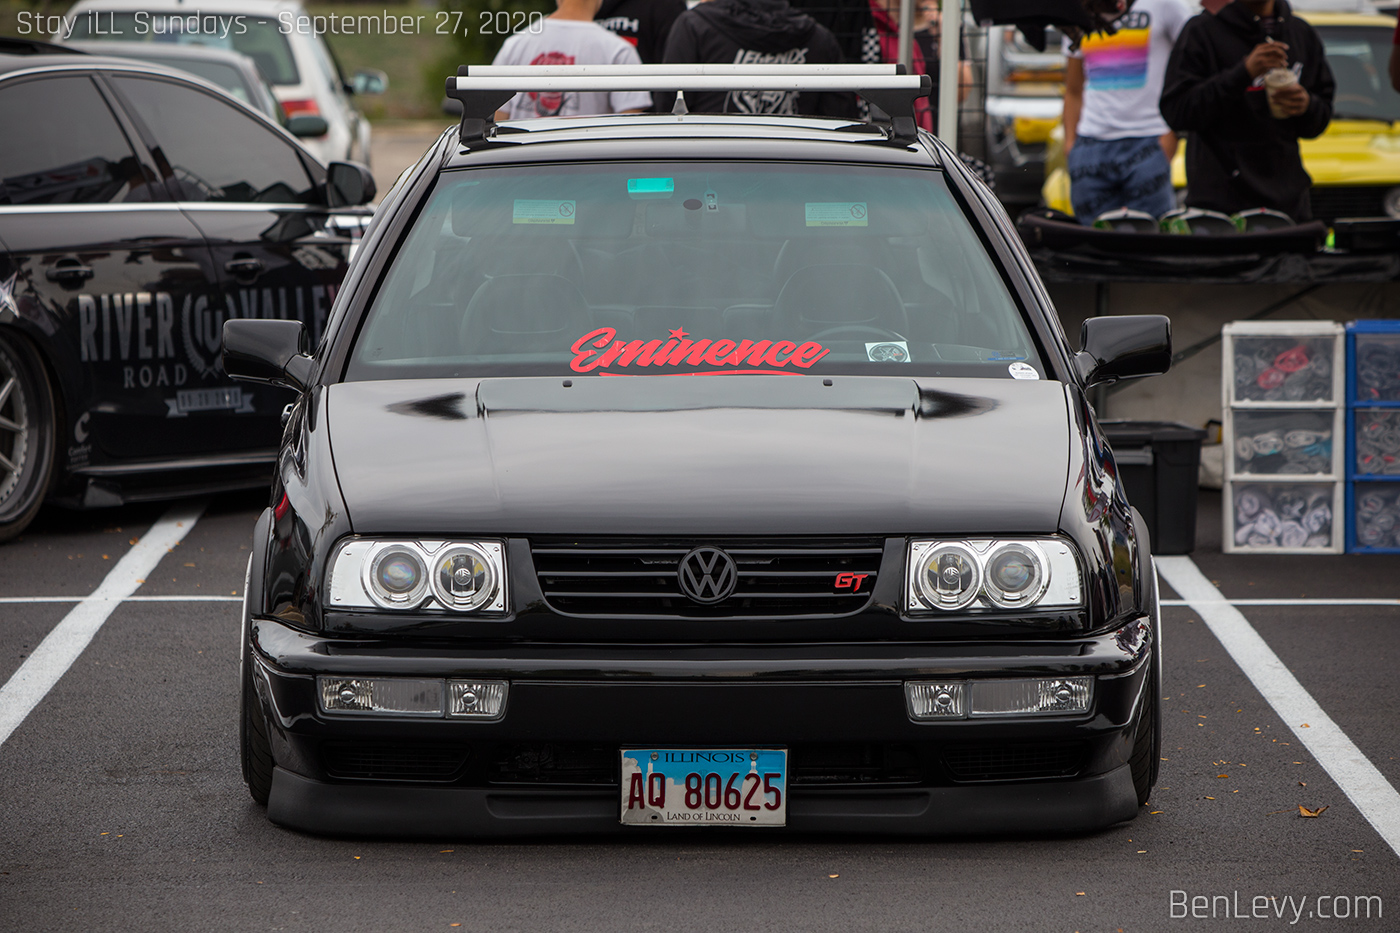 Black Volkswagen Jetta GT with Eminence sticker